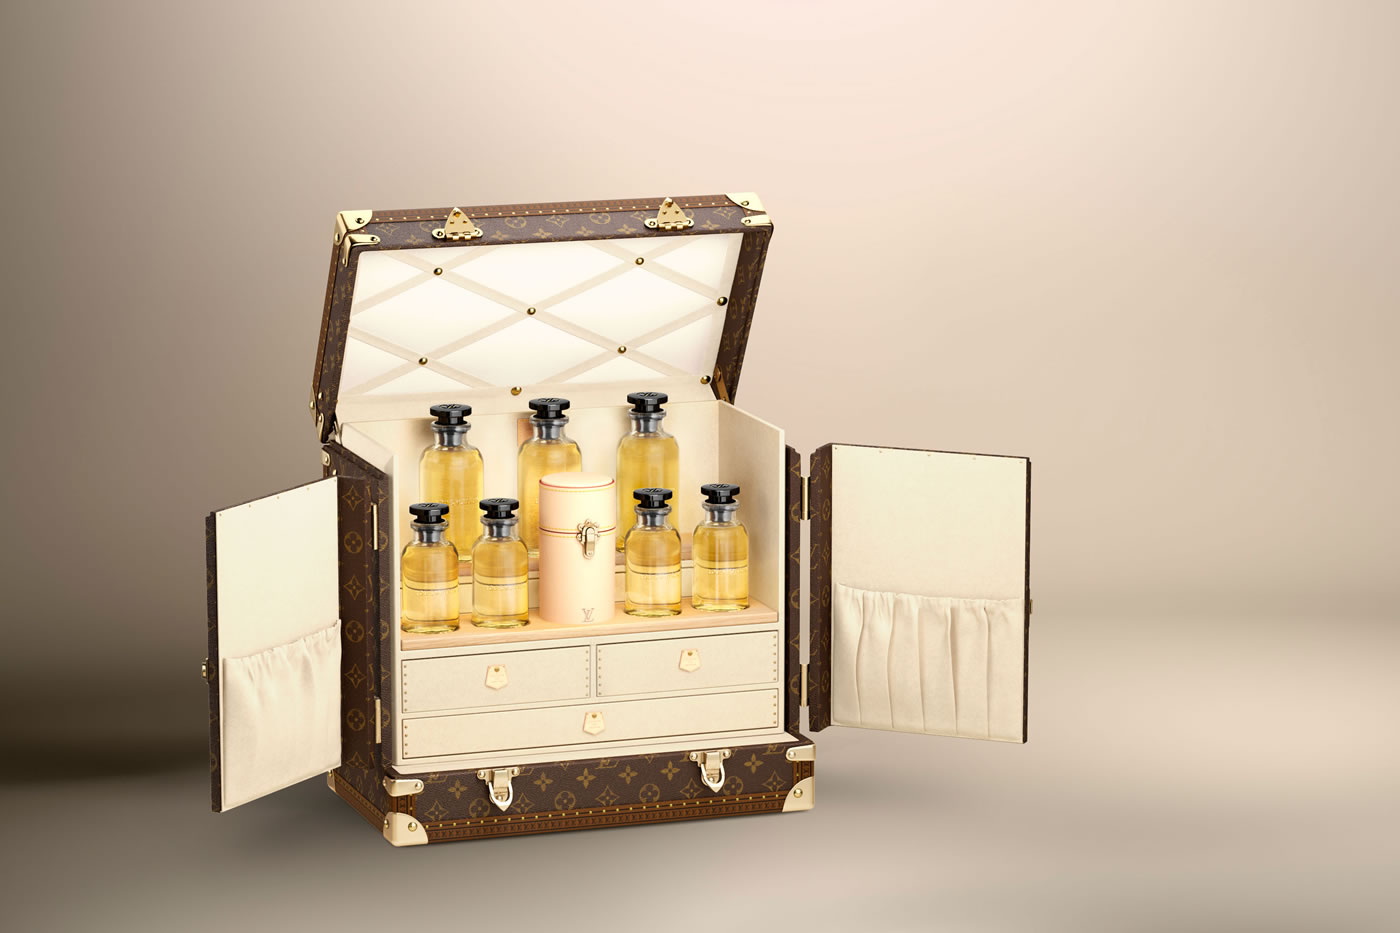 Louis Vuitton's Jacques Cavallier Belletrud: a poet of perfume